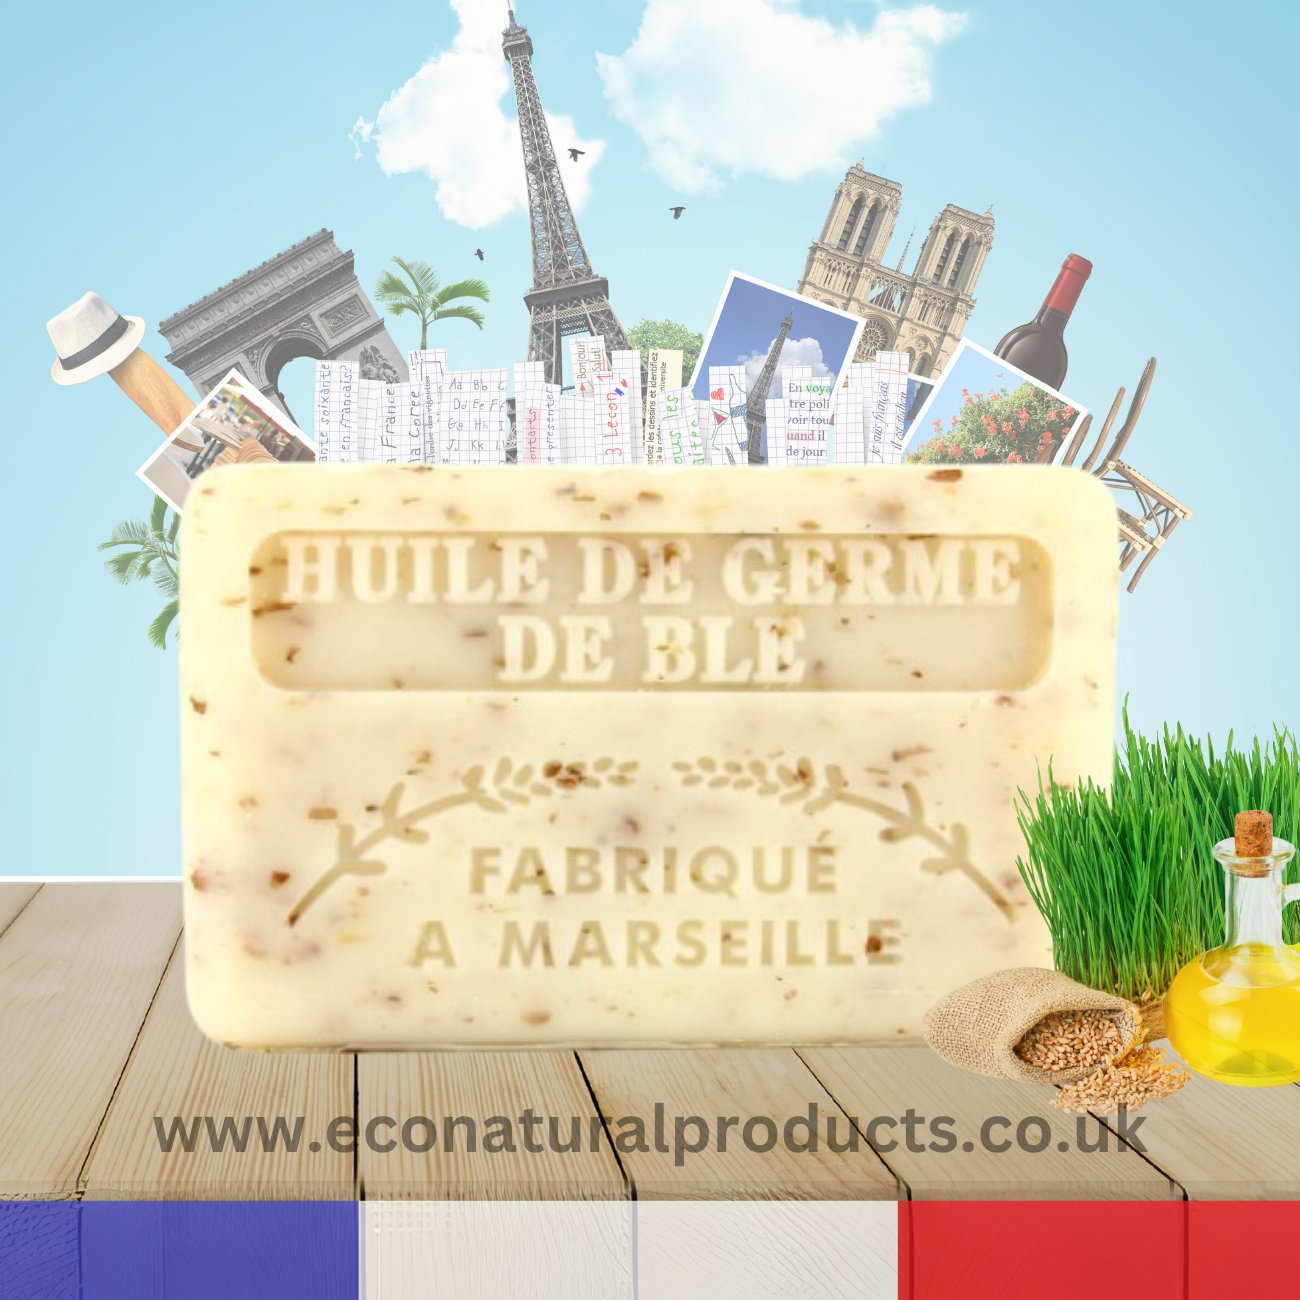 French Marseille Soap Huile de Germe de Ble (Wheatgerm Oil) 125g